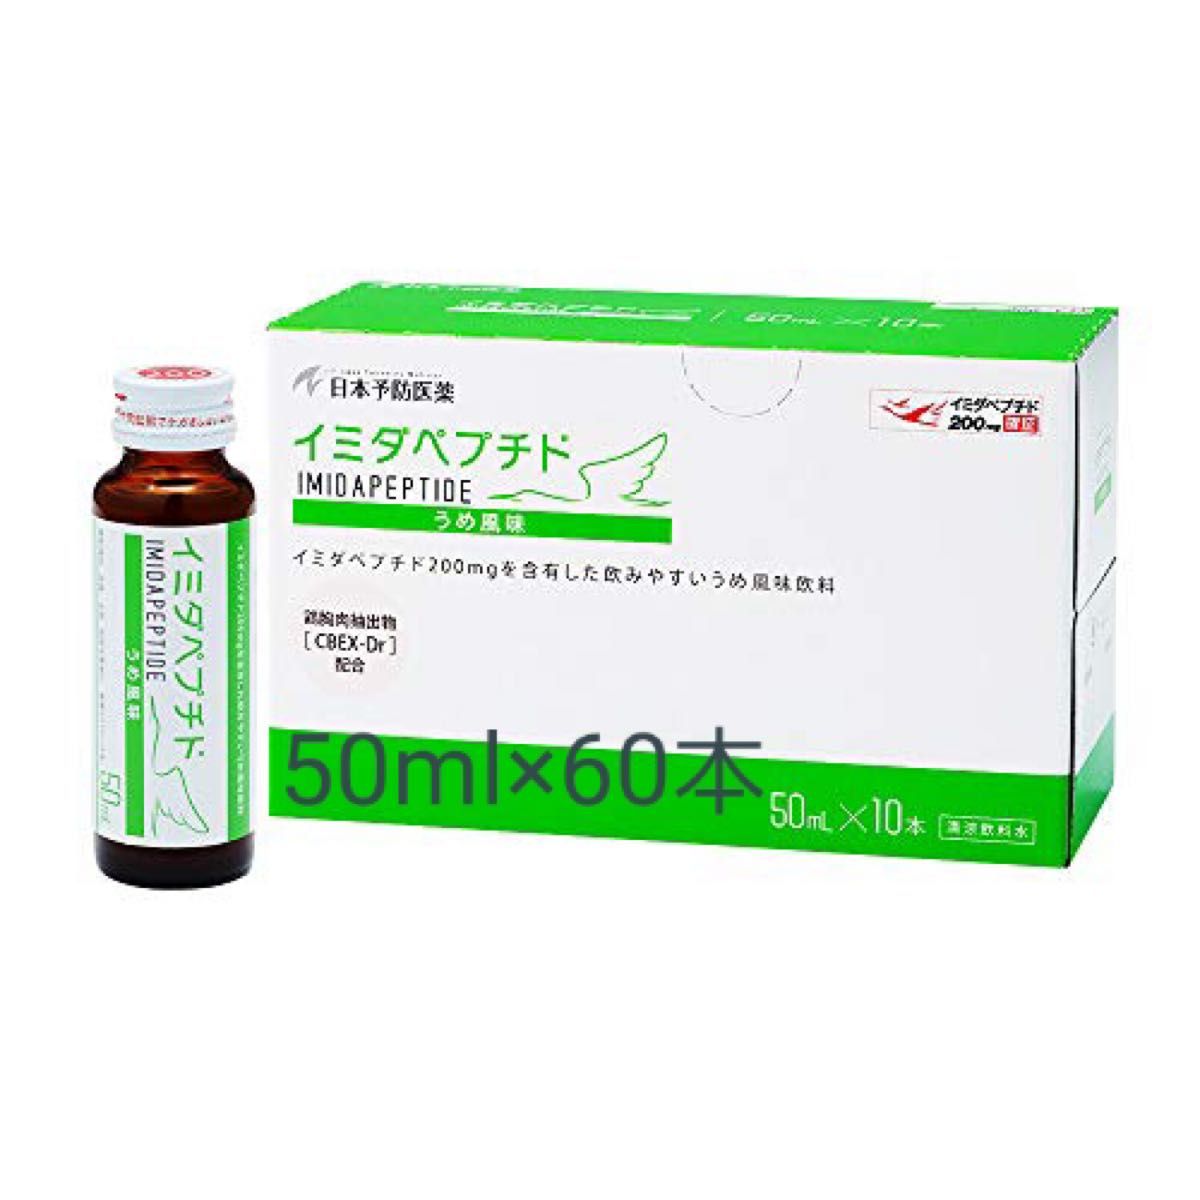 イミダペプチド 30ml×30本 日本予防医薬